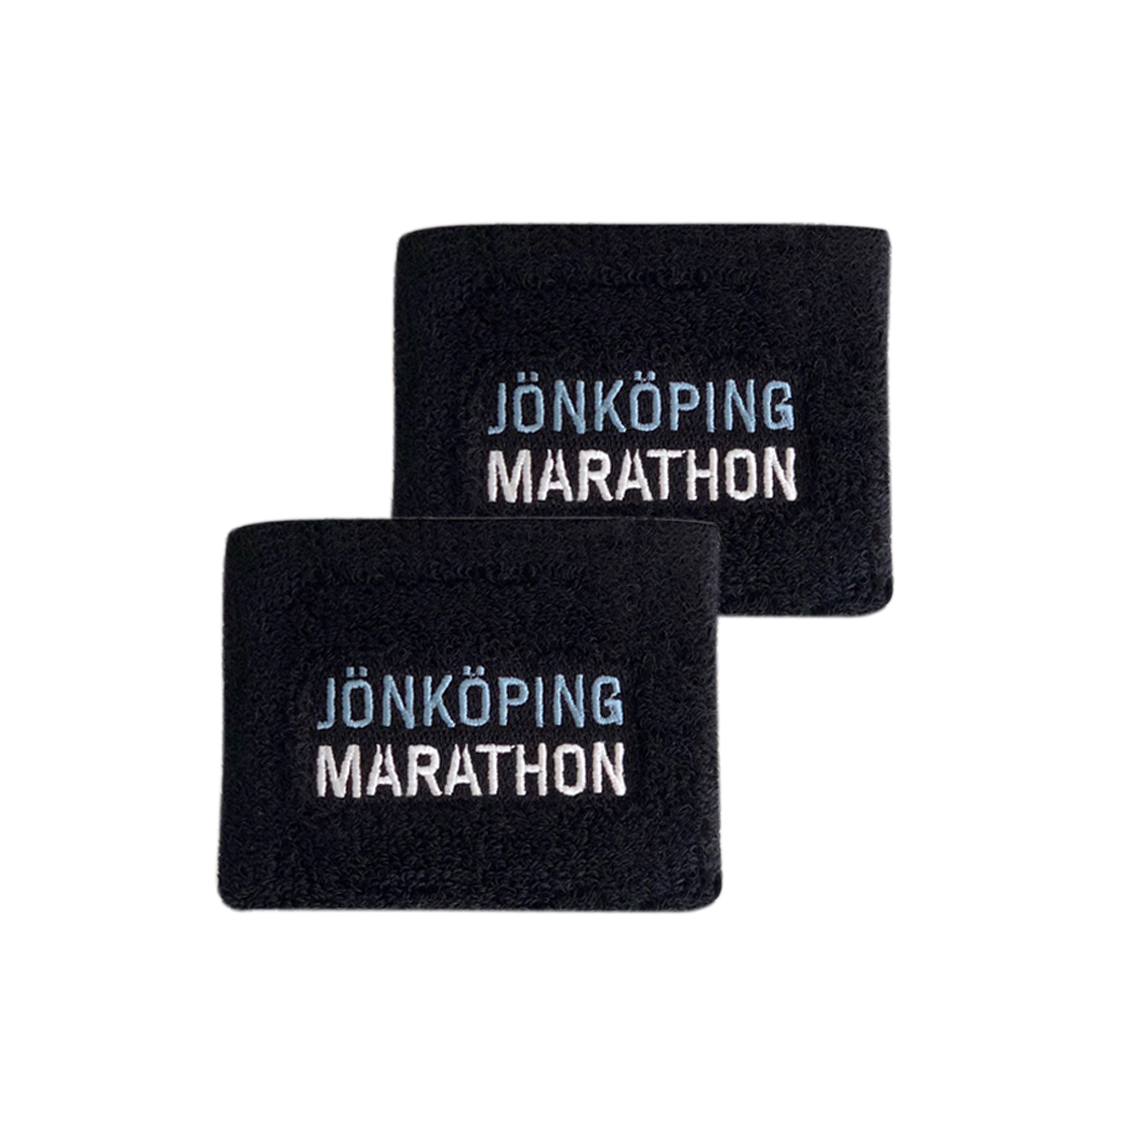 Jönköping marathon armband